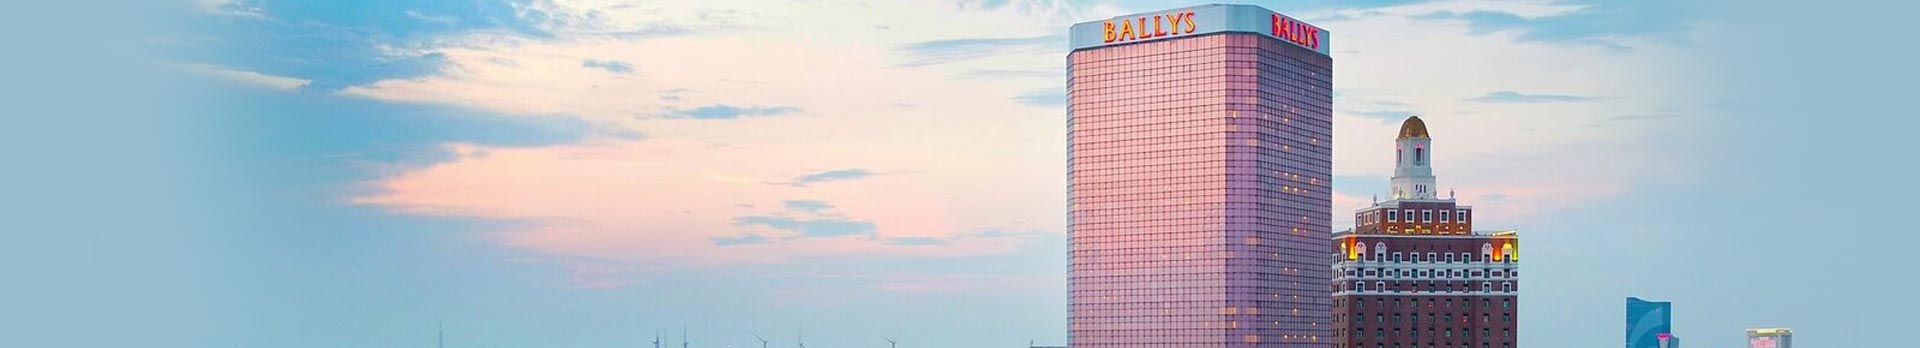 Bally’s Casino Atlantic City